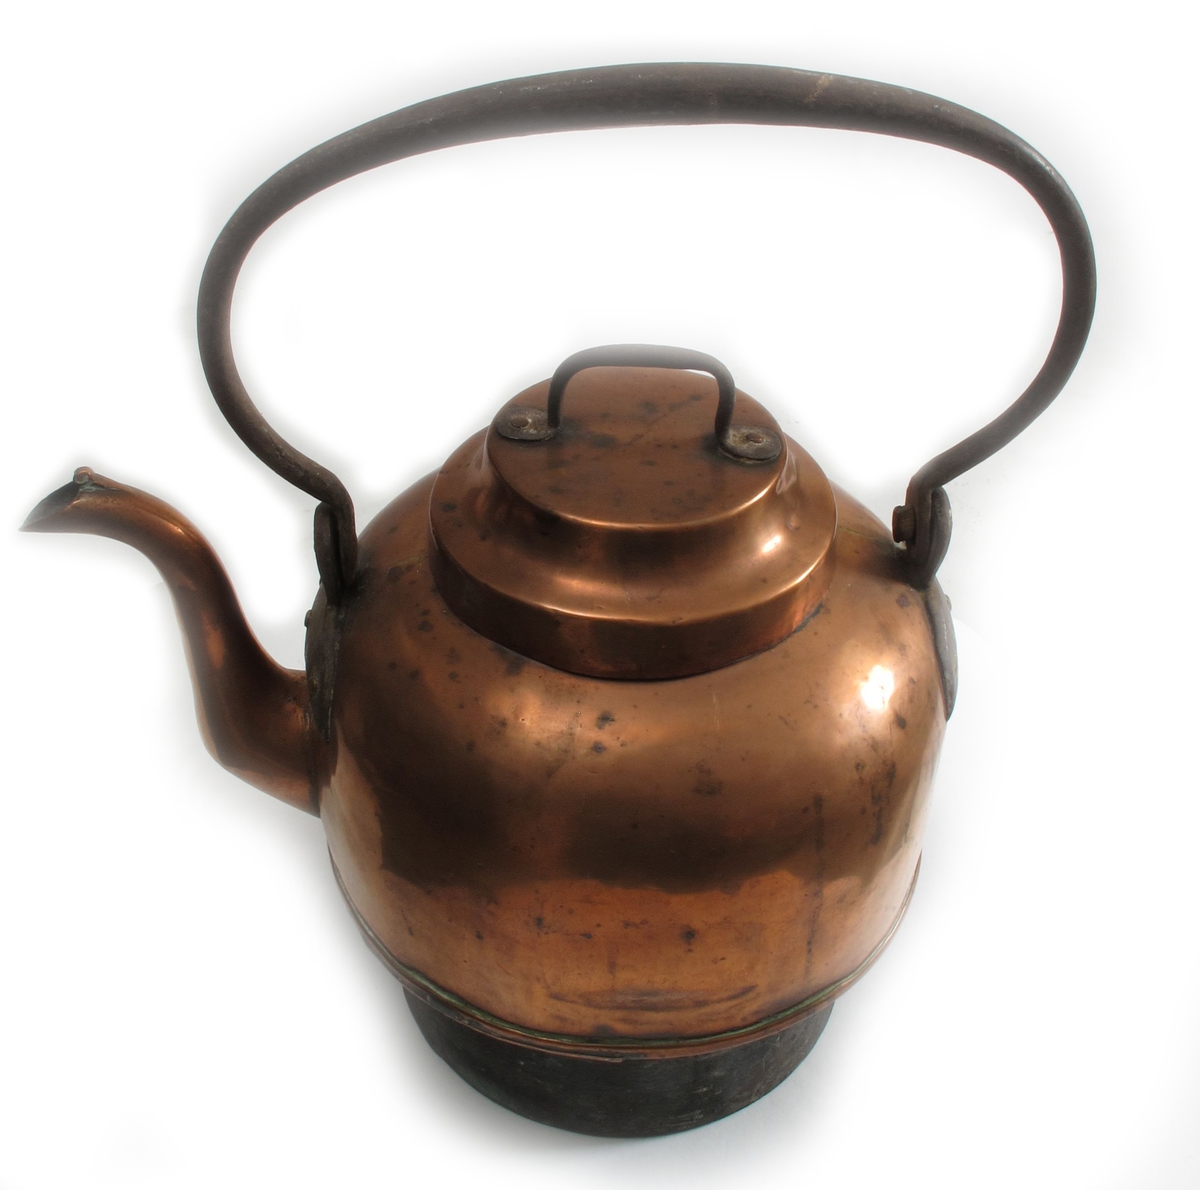 Kaffekjele   for komfyr,  2. halvdel 1800 tallet.  Kobber, jern  hank. Kjele med sylindrisk nedre del, over denne er  korpus bredere, rundet oventil, med rundet jernhank.  Lokk med flat topp og jernhank.